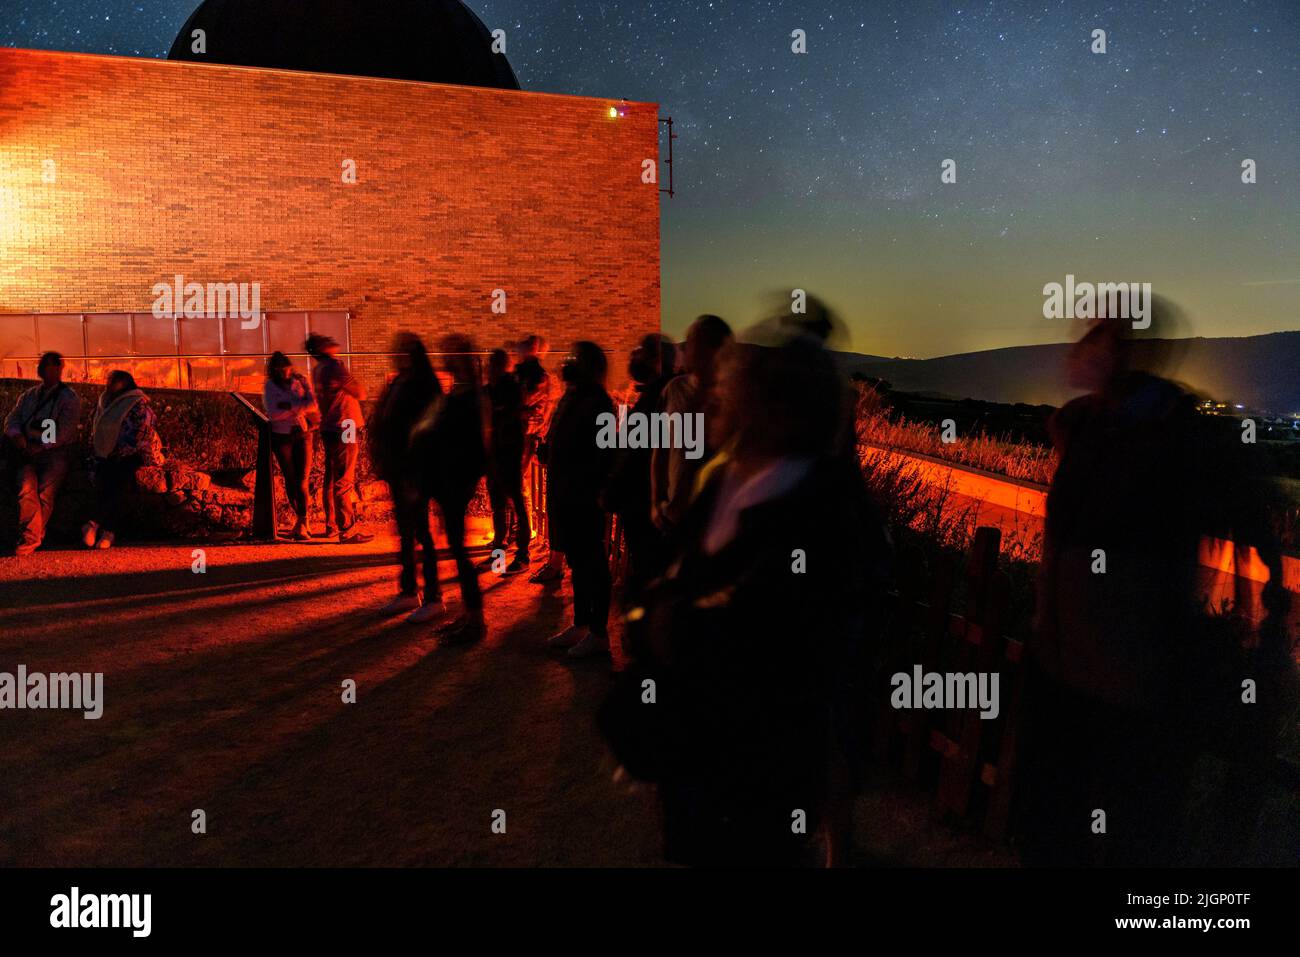 Observatorio Astronómico de Montsec por la noche durante una observación astronómica con la Vía Láctea en el cielo (Àger, Lleida, Cataluña, España) Foto de stock